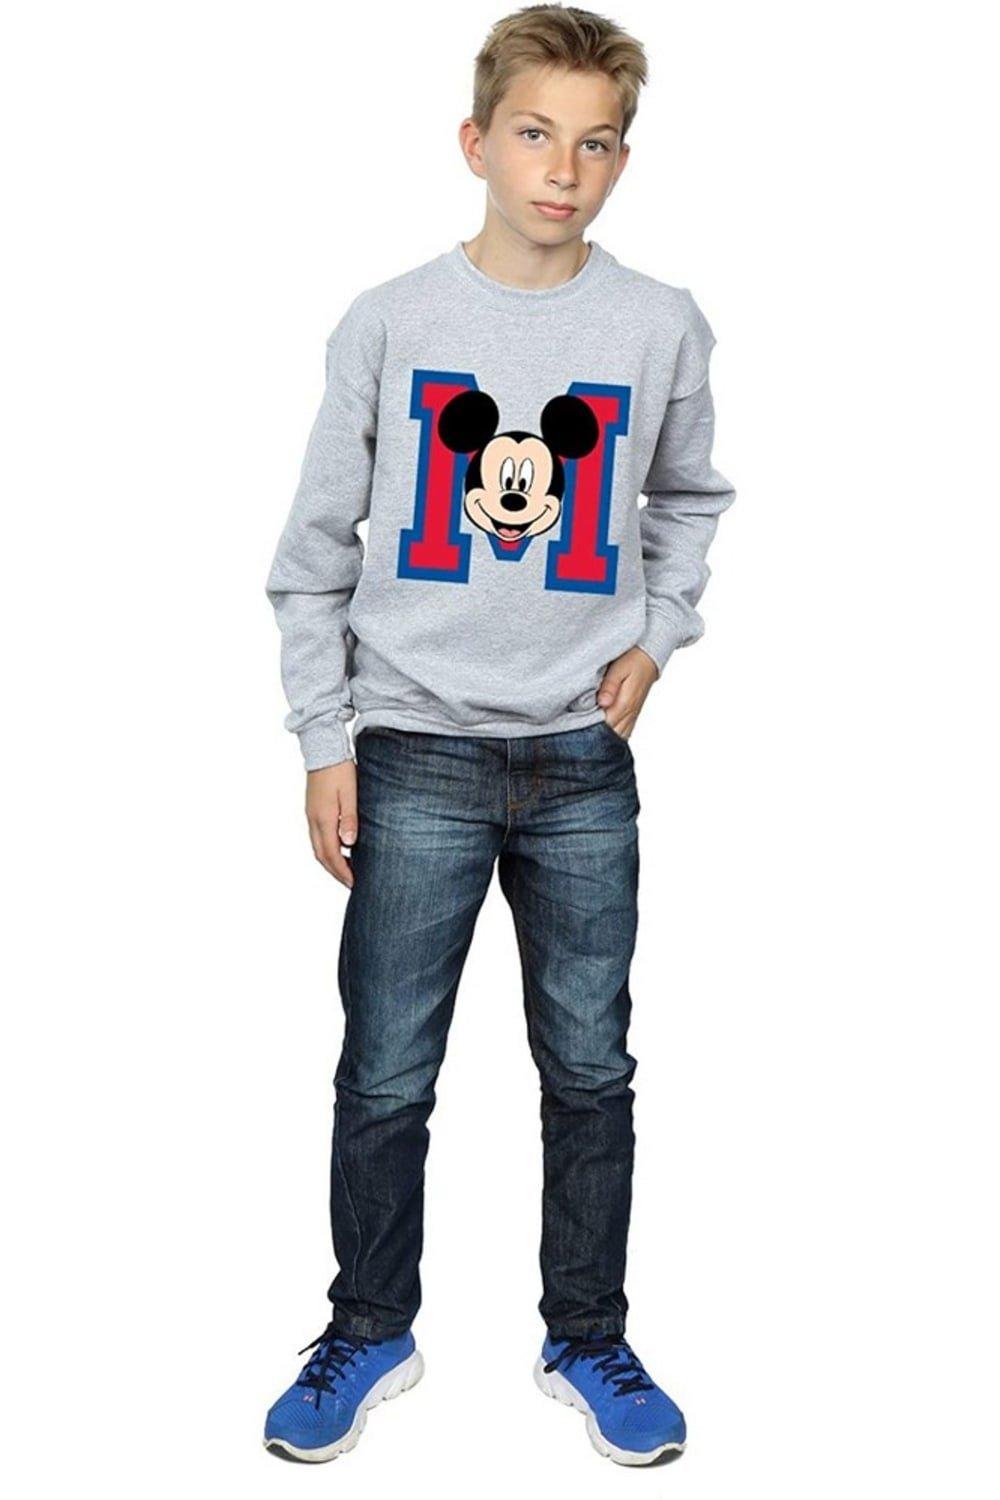 Толстовка с лицом Микки Мауса Disney, серый футболка с милым лицом микки мауса disney розовый